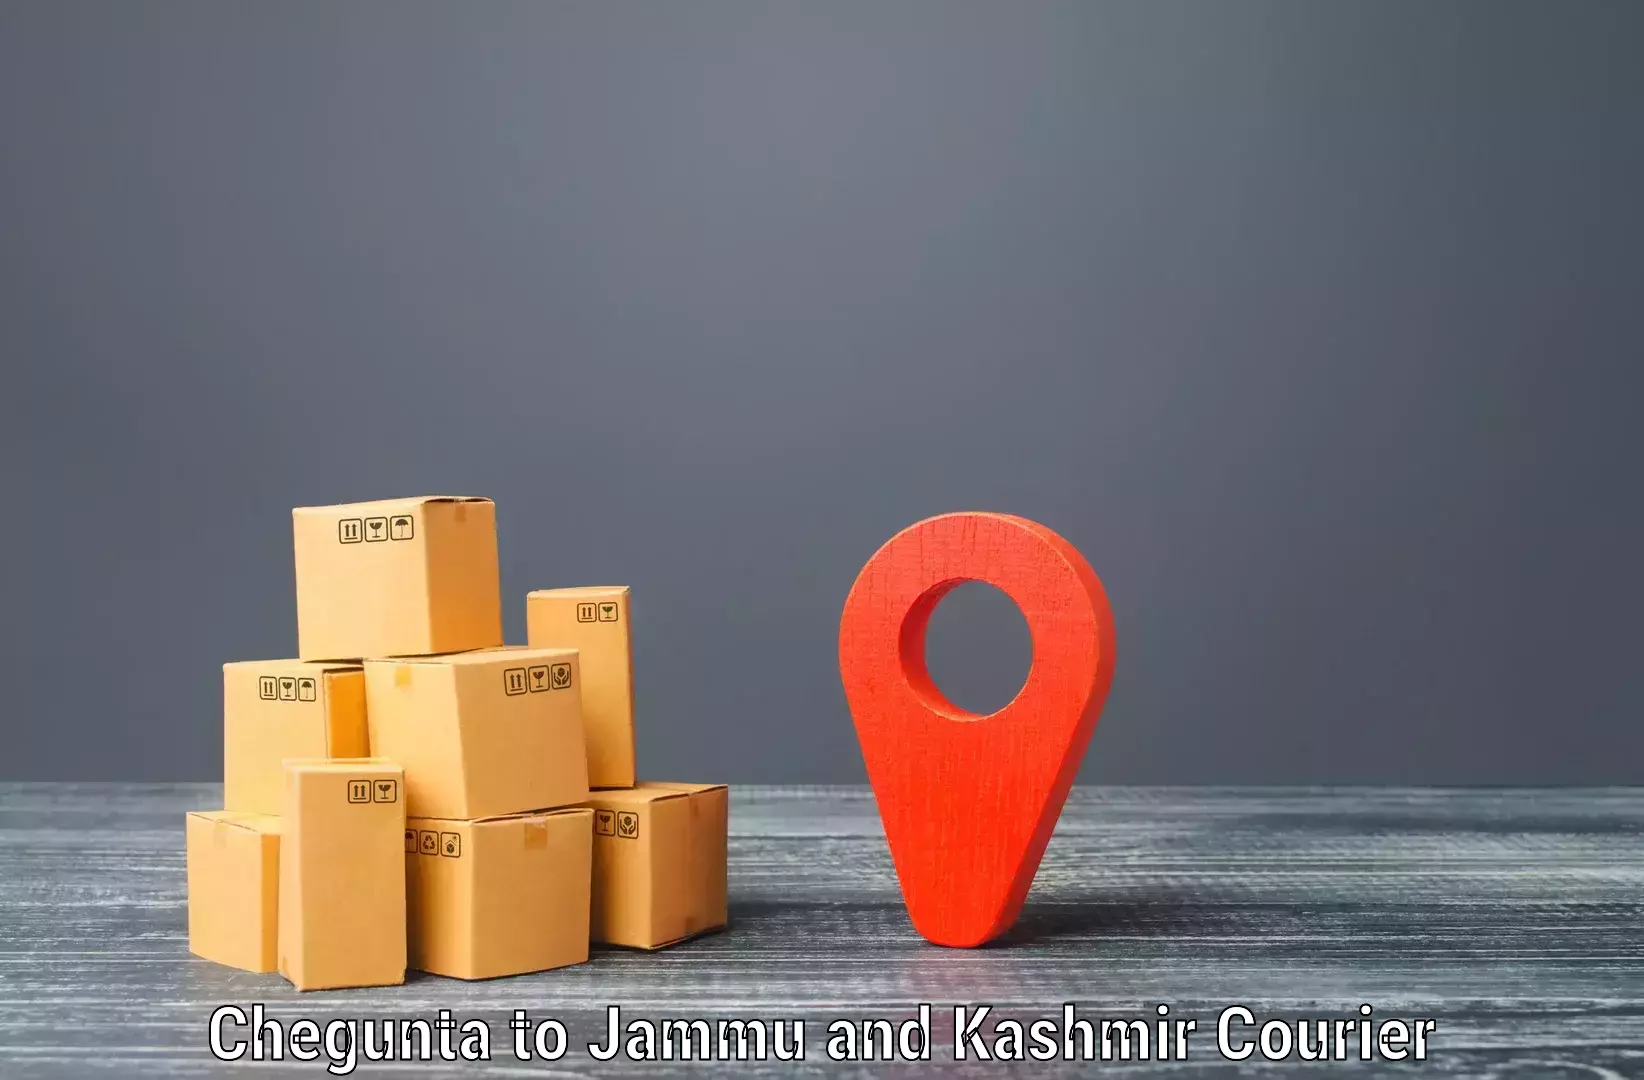 State-of-the-art courier technology Chegunta to Srinagar Kashmir